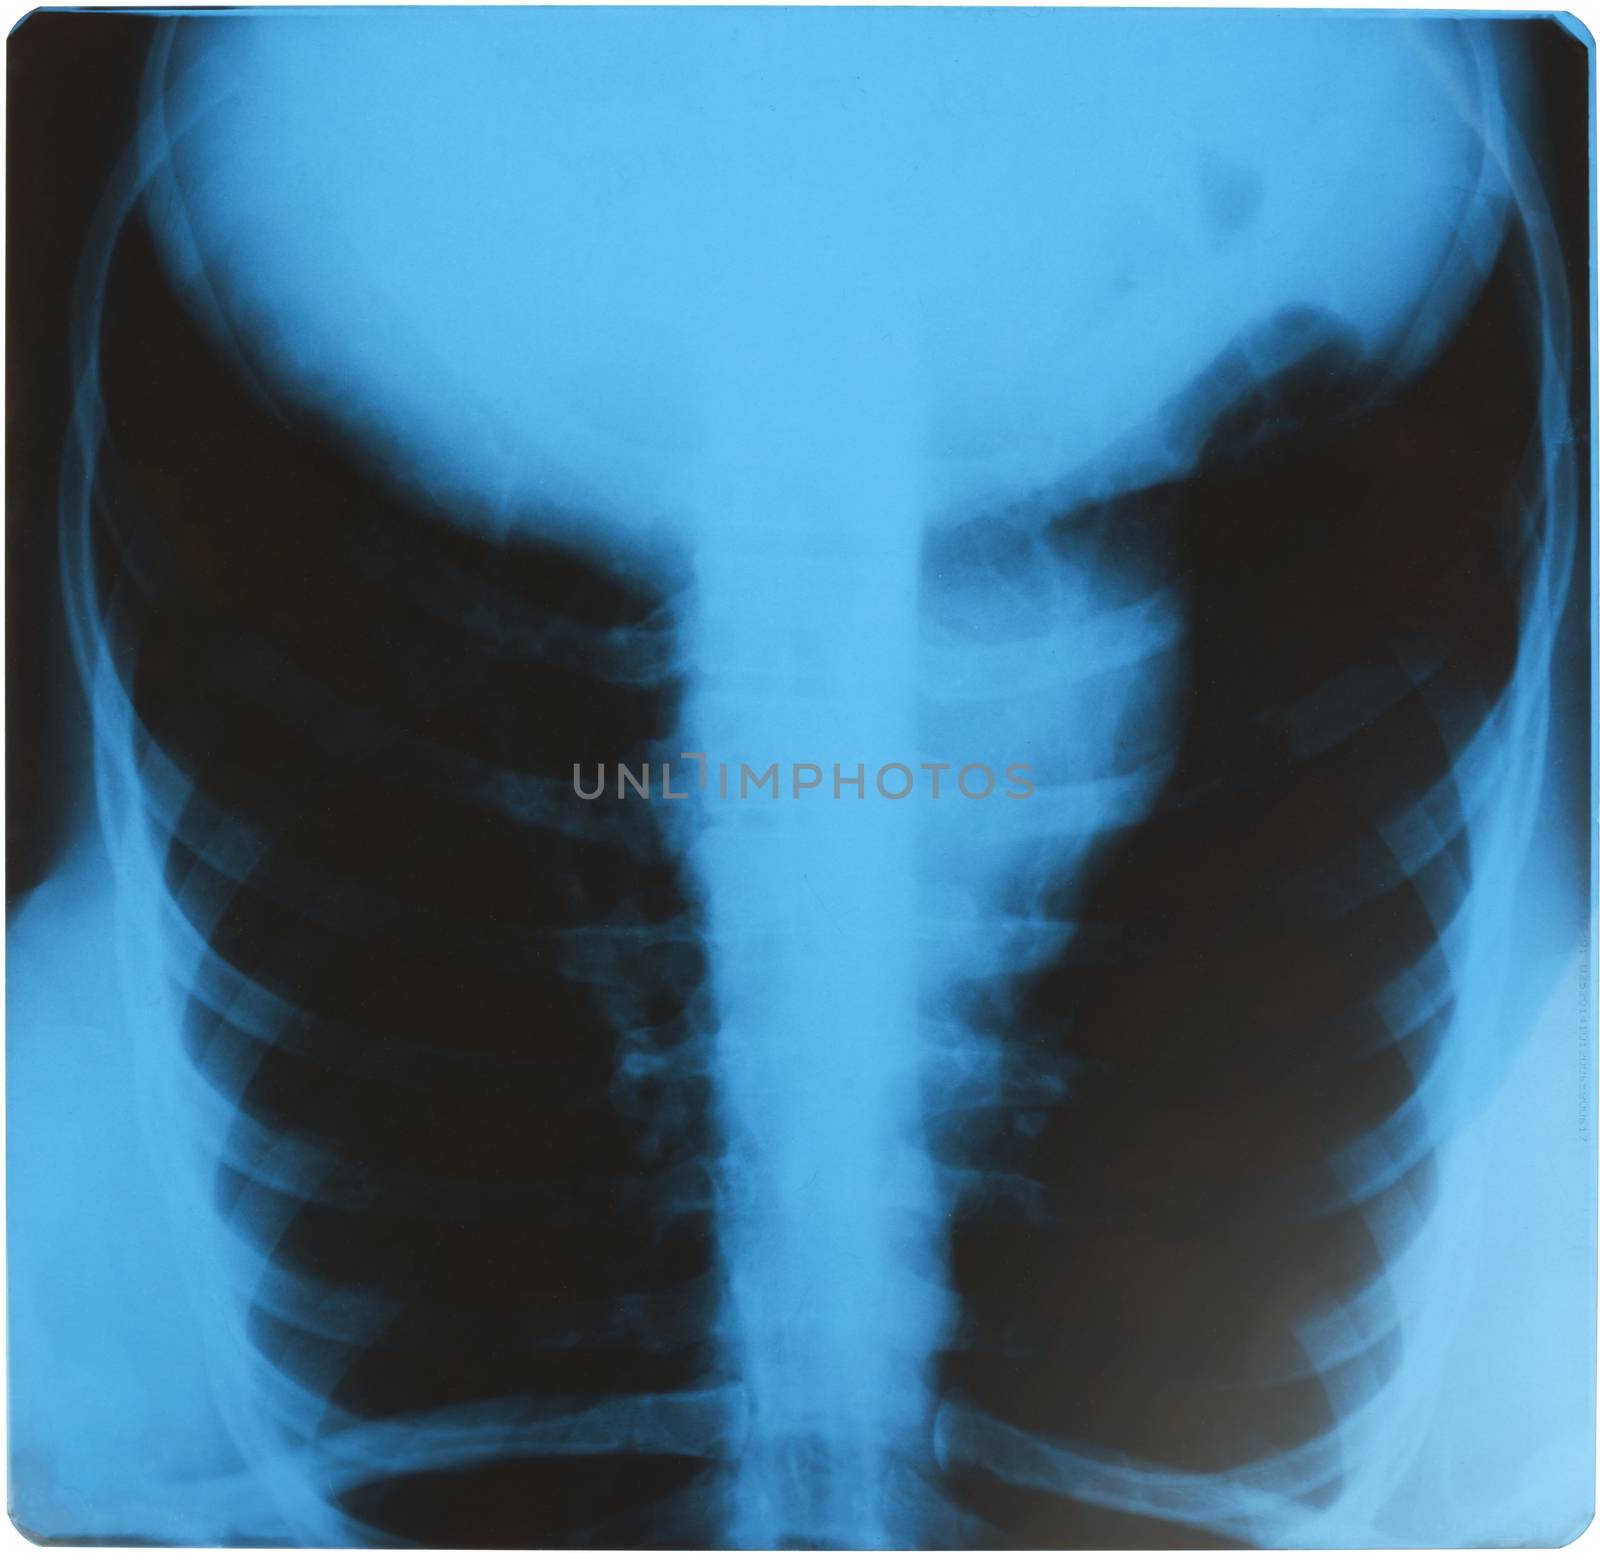 X-ray examination of human by cherezoff